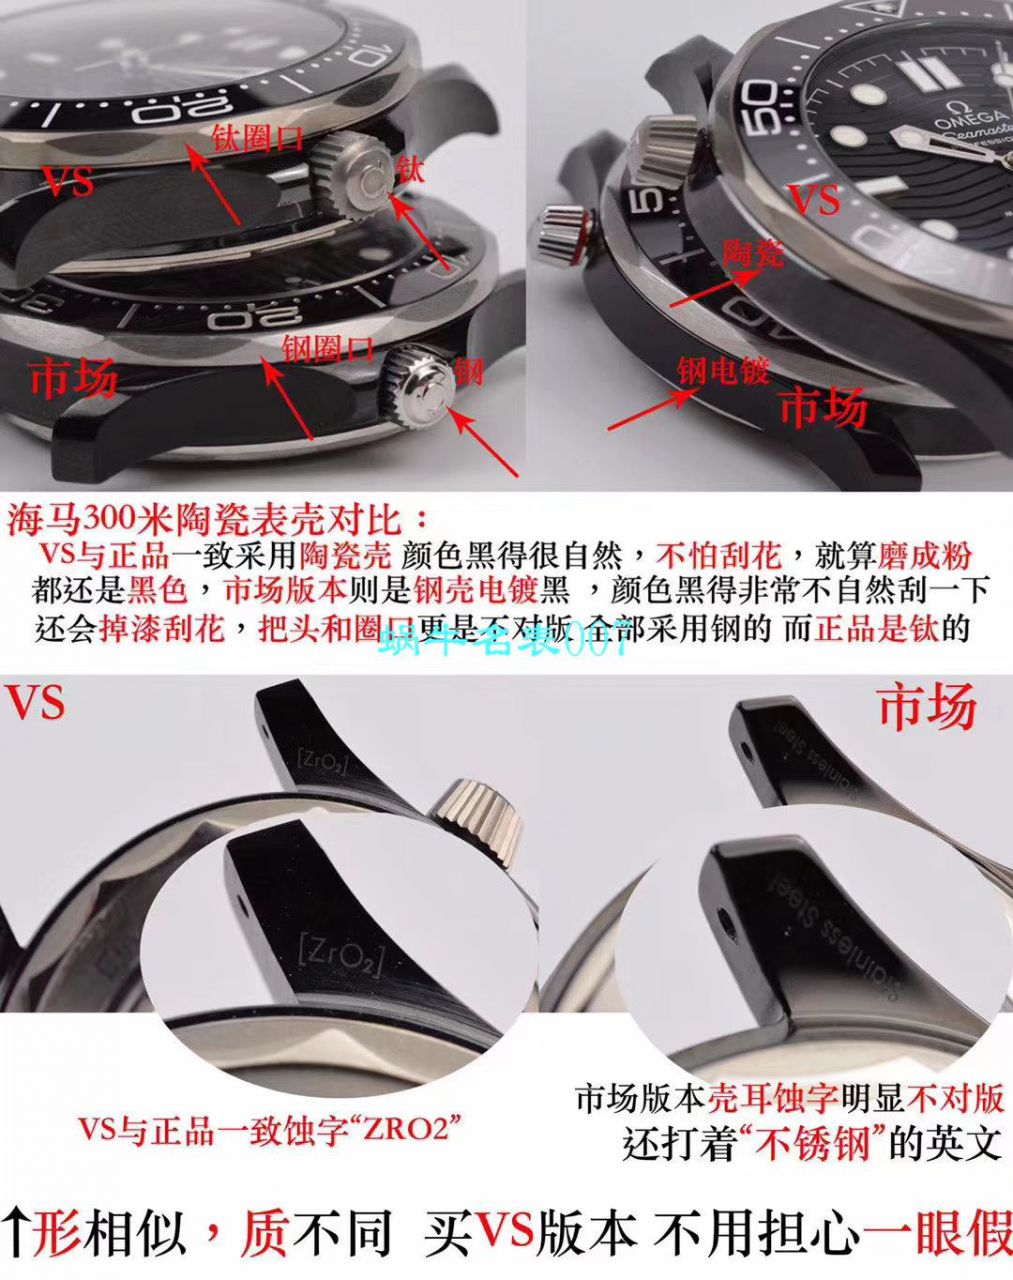 【VS厂顶级复刻手表】欧米茄海马300M真陶瓷系列210.92.44.20.01.001腕表 / M603